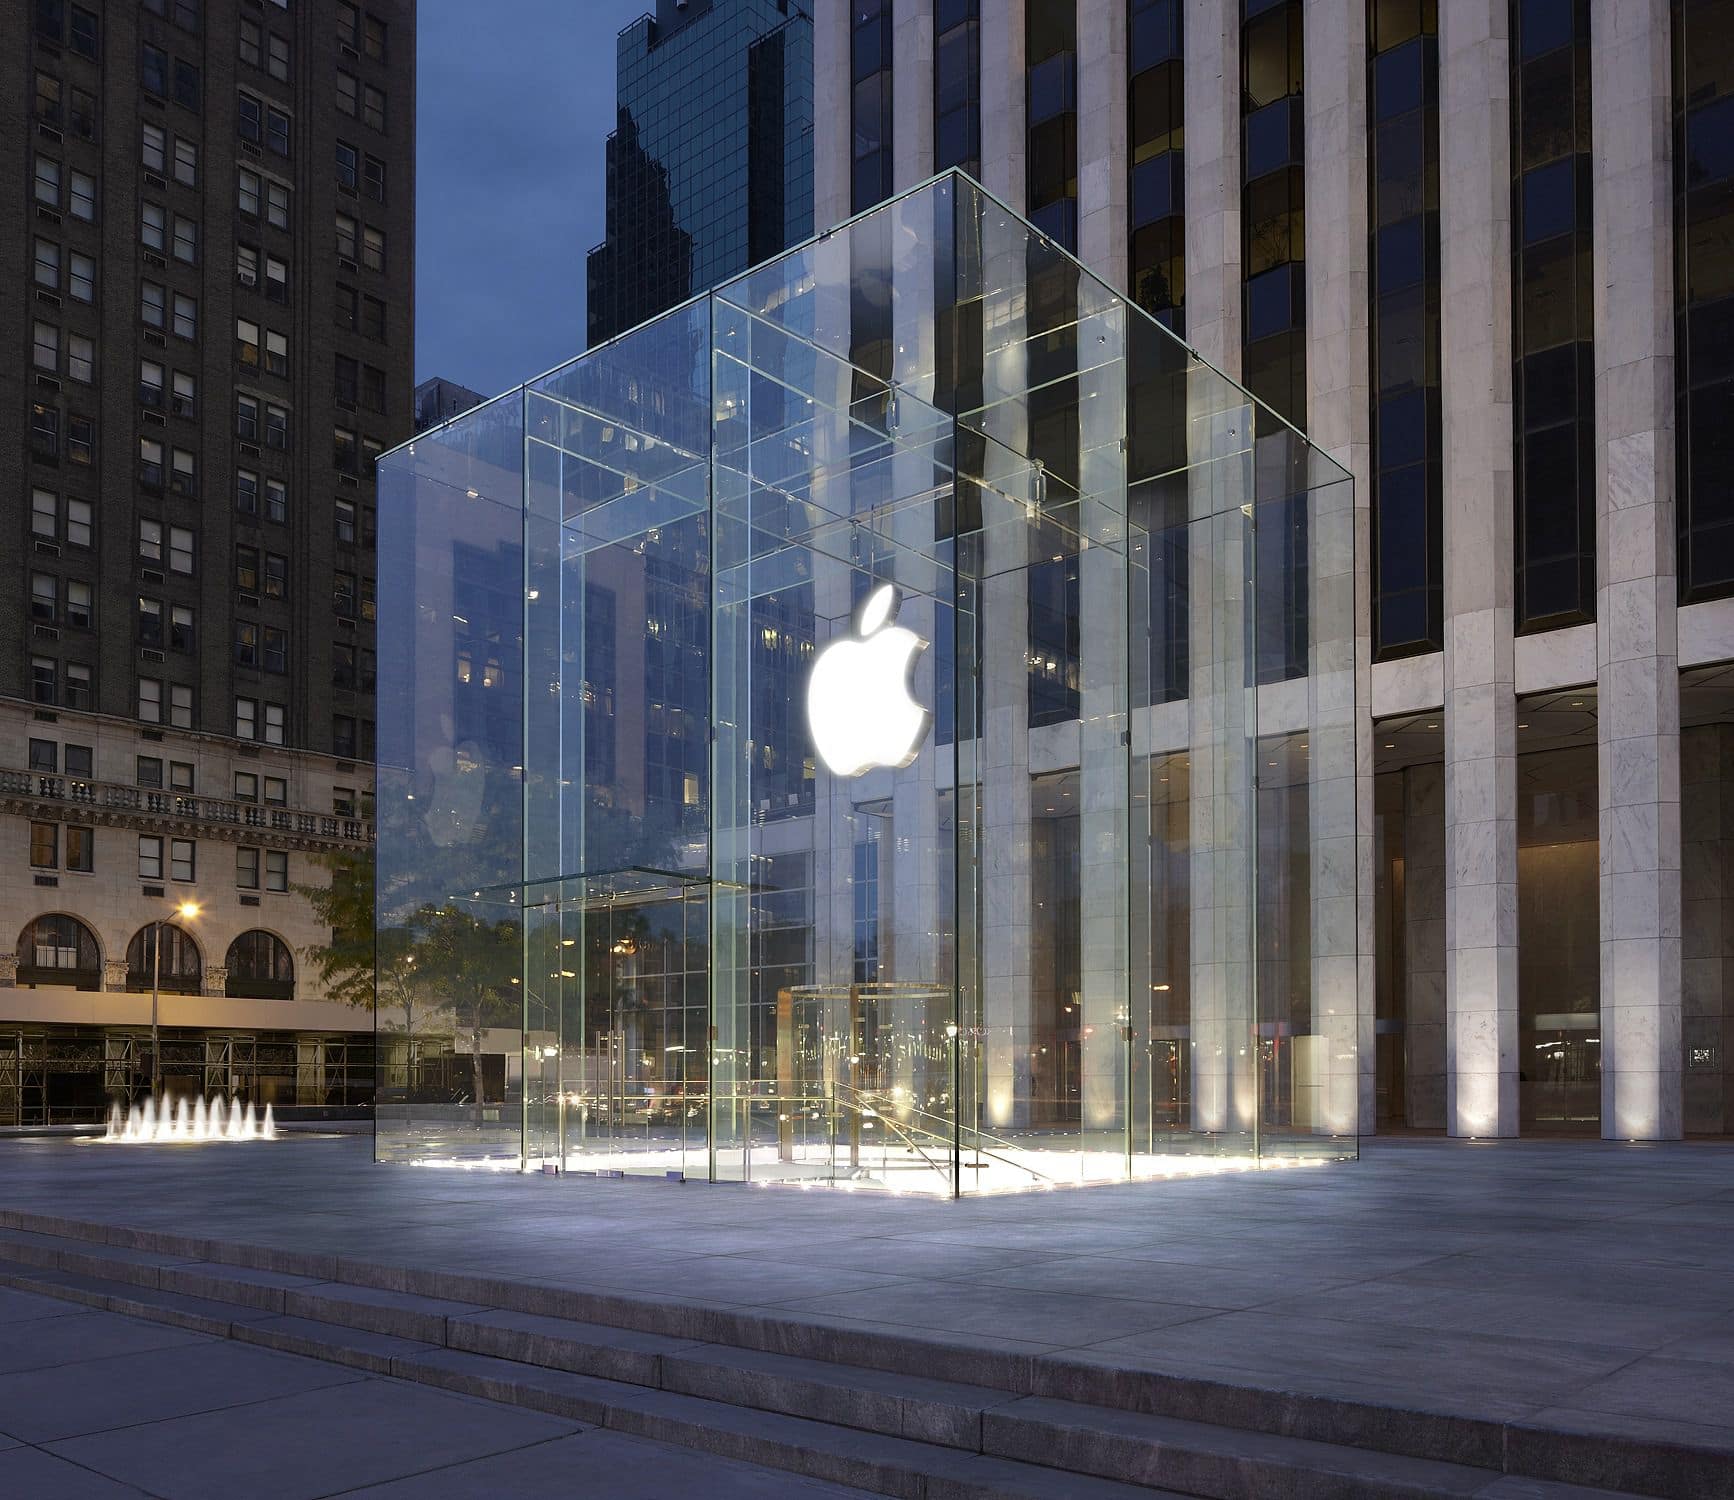 Dù vậy, ông Benioff cho biết ước mơ cuối cùng của bản thân vào thời điểm đó là được làm việc cho Apple.